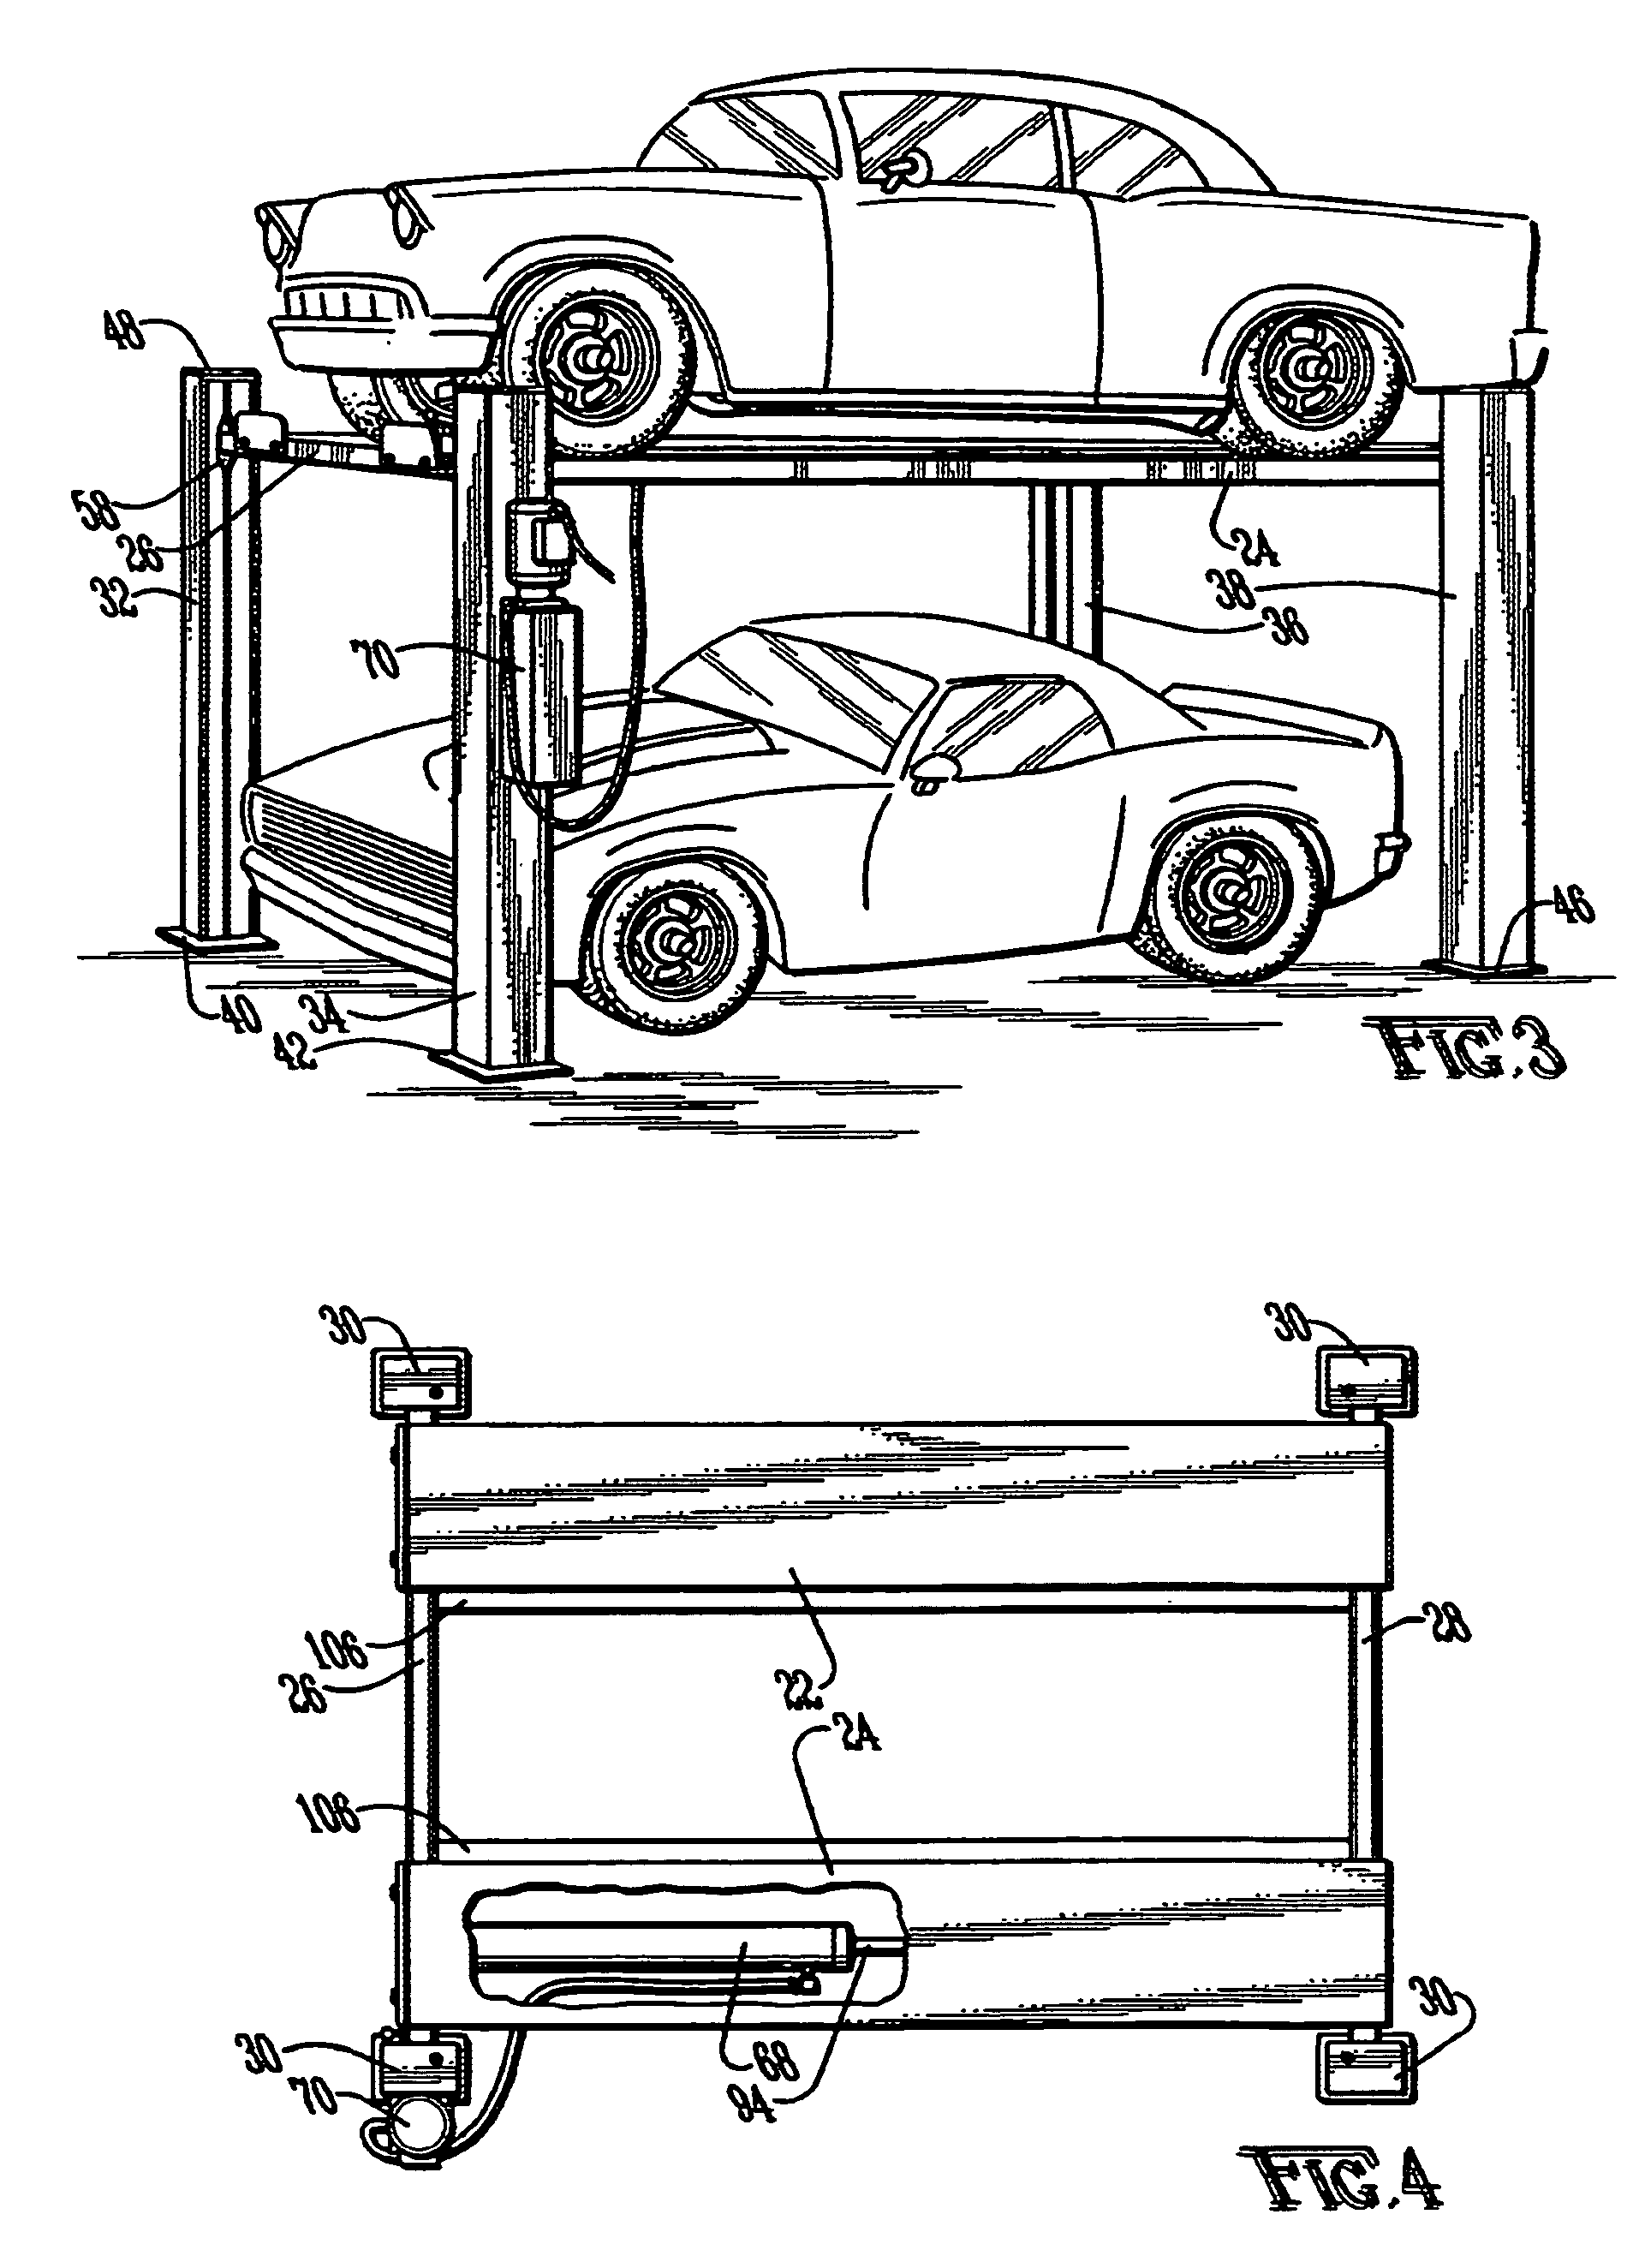 Hydraulic vehicle lift